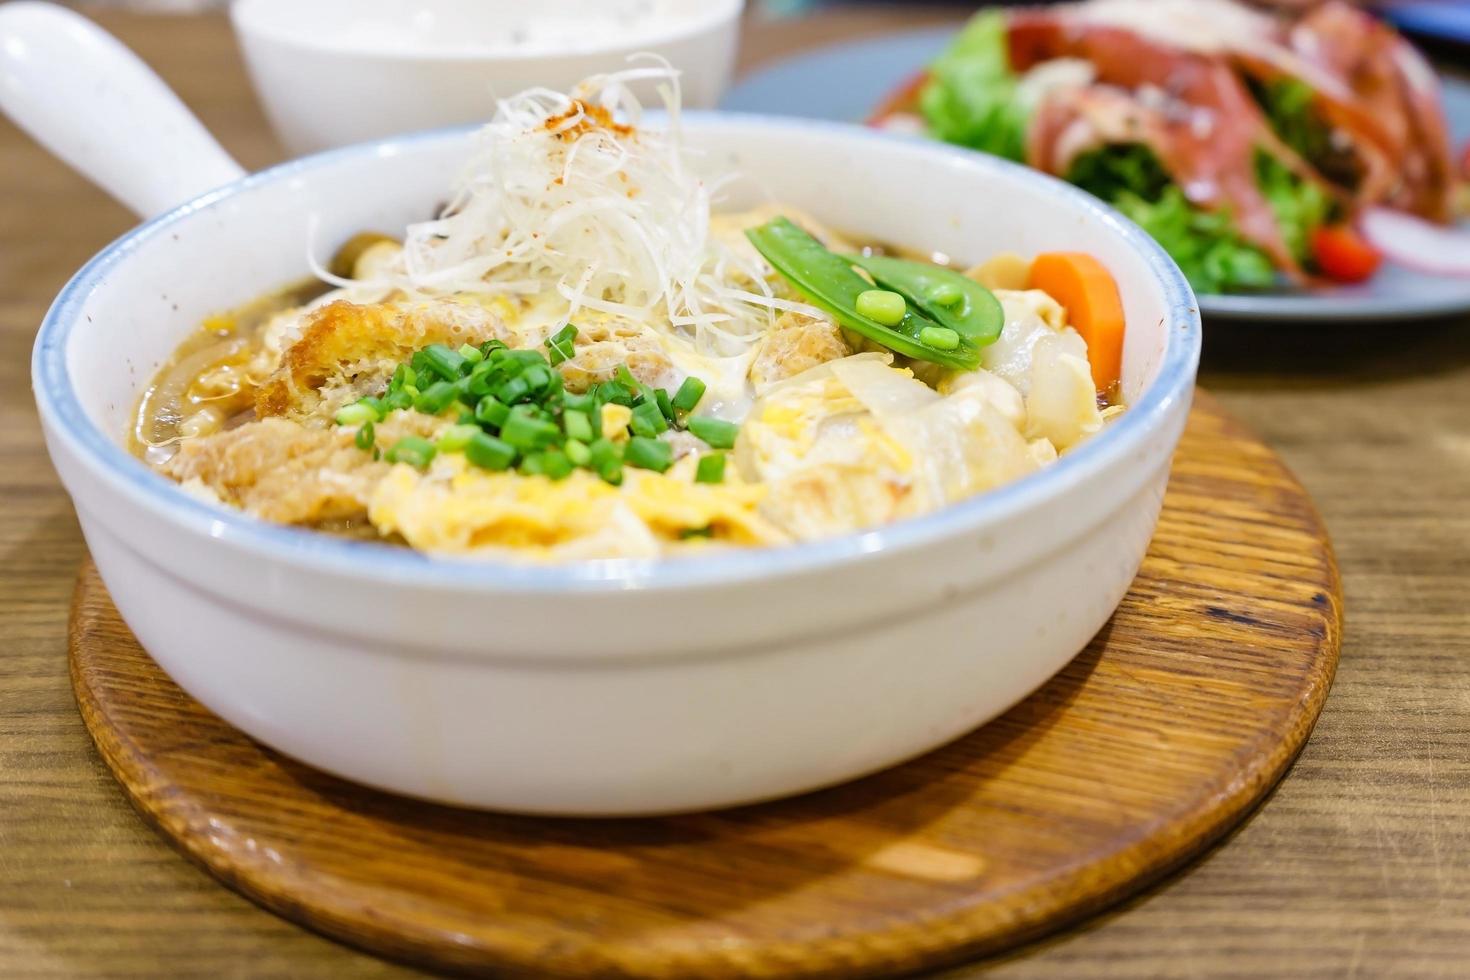 Katsudon o asado de cerdo frito al estilo japonés con huevo e ingrediente japonés mezclado con arroz listo para servir en el restaurante foto